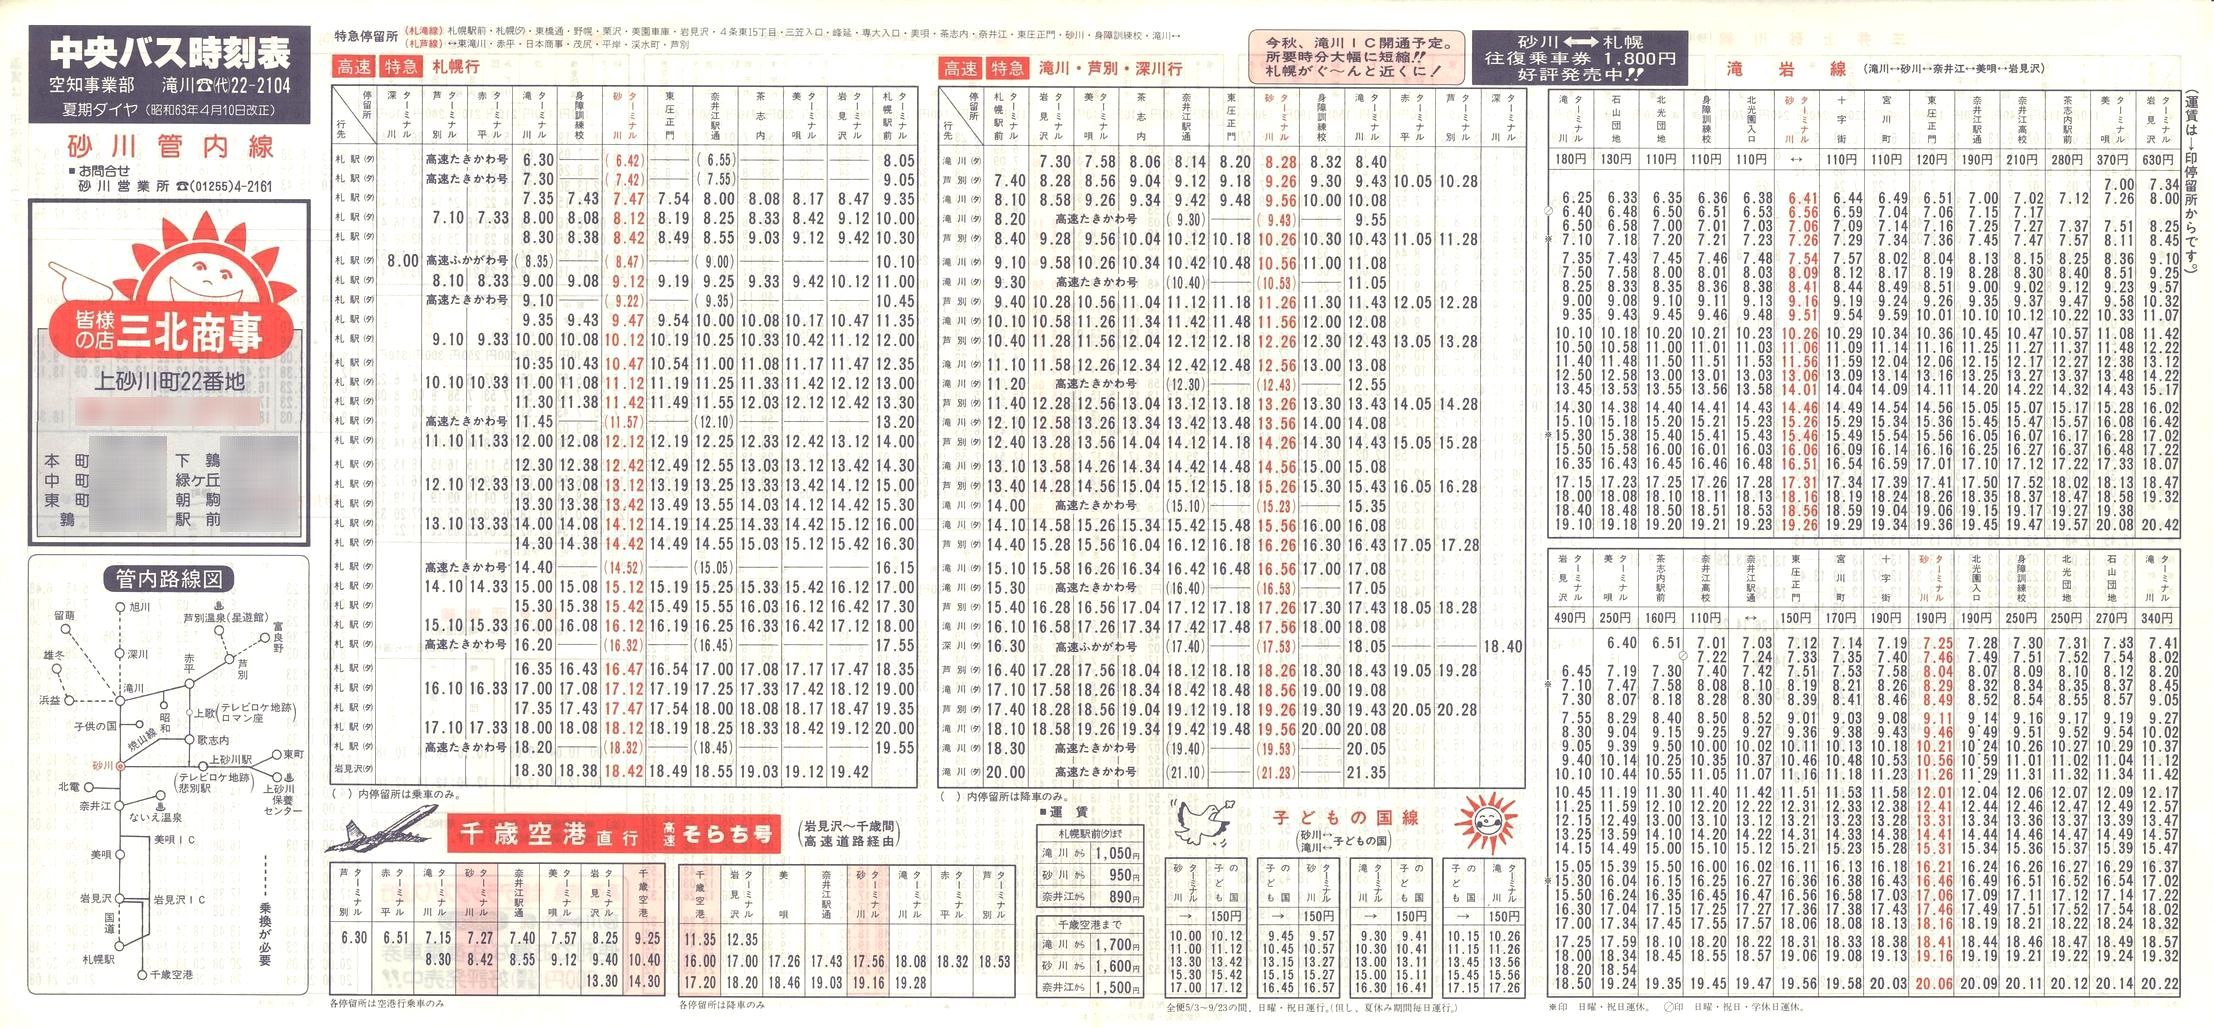 1988-04-10改正_北海道中央バス(空知)_砂川管内線時刻表表面